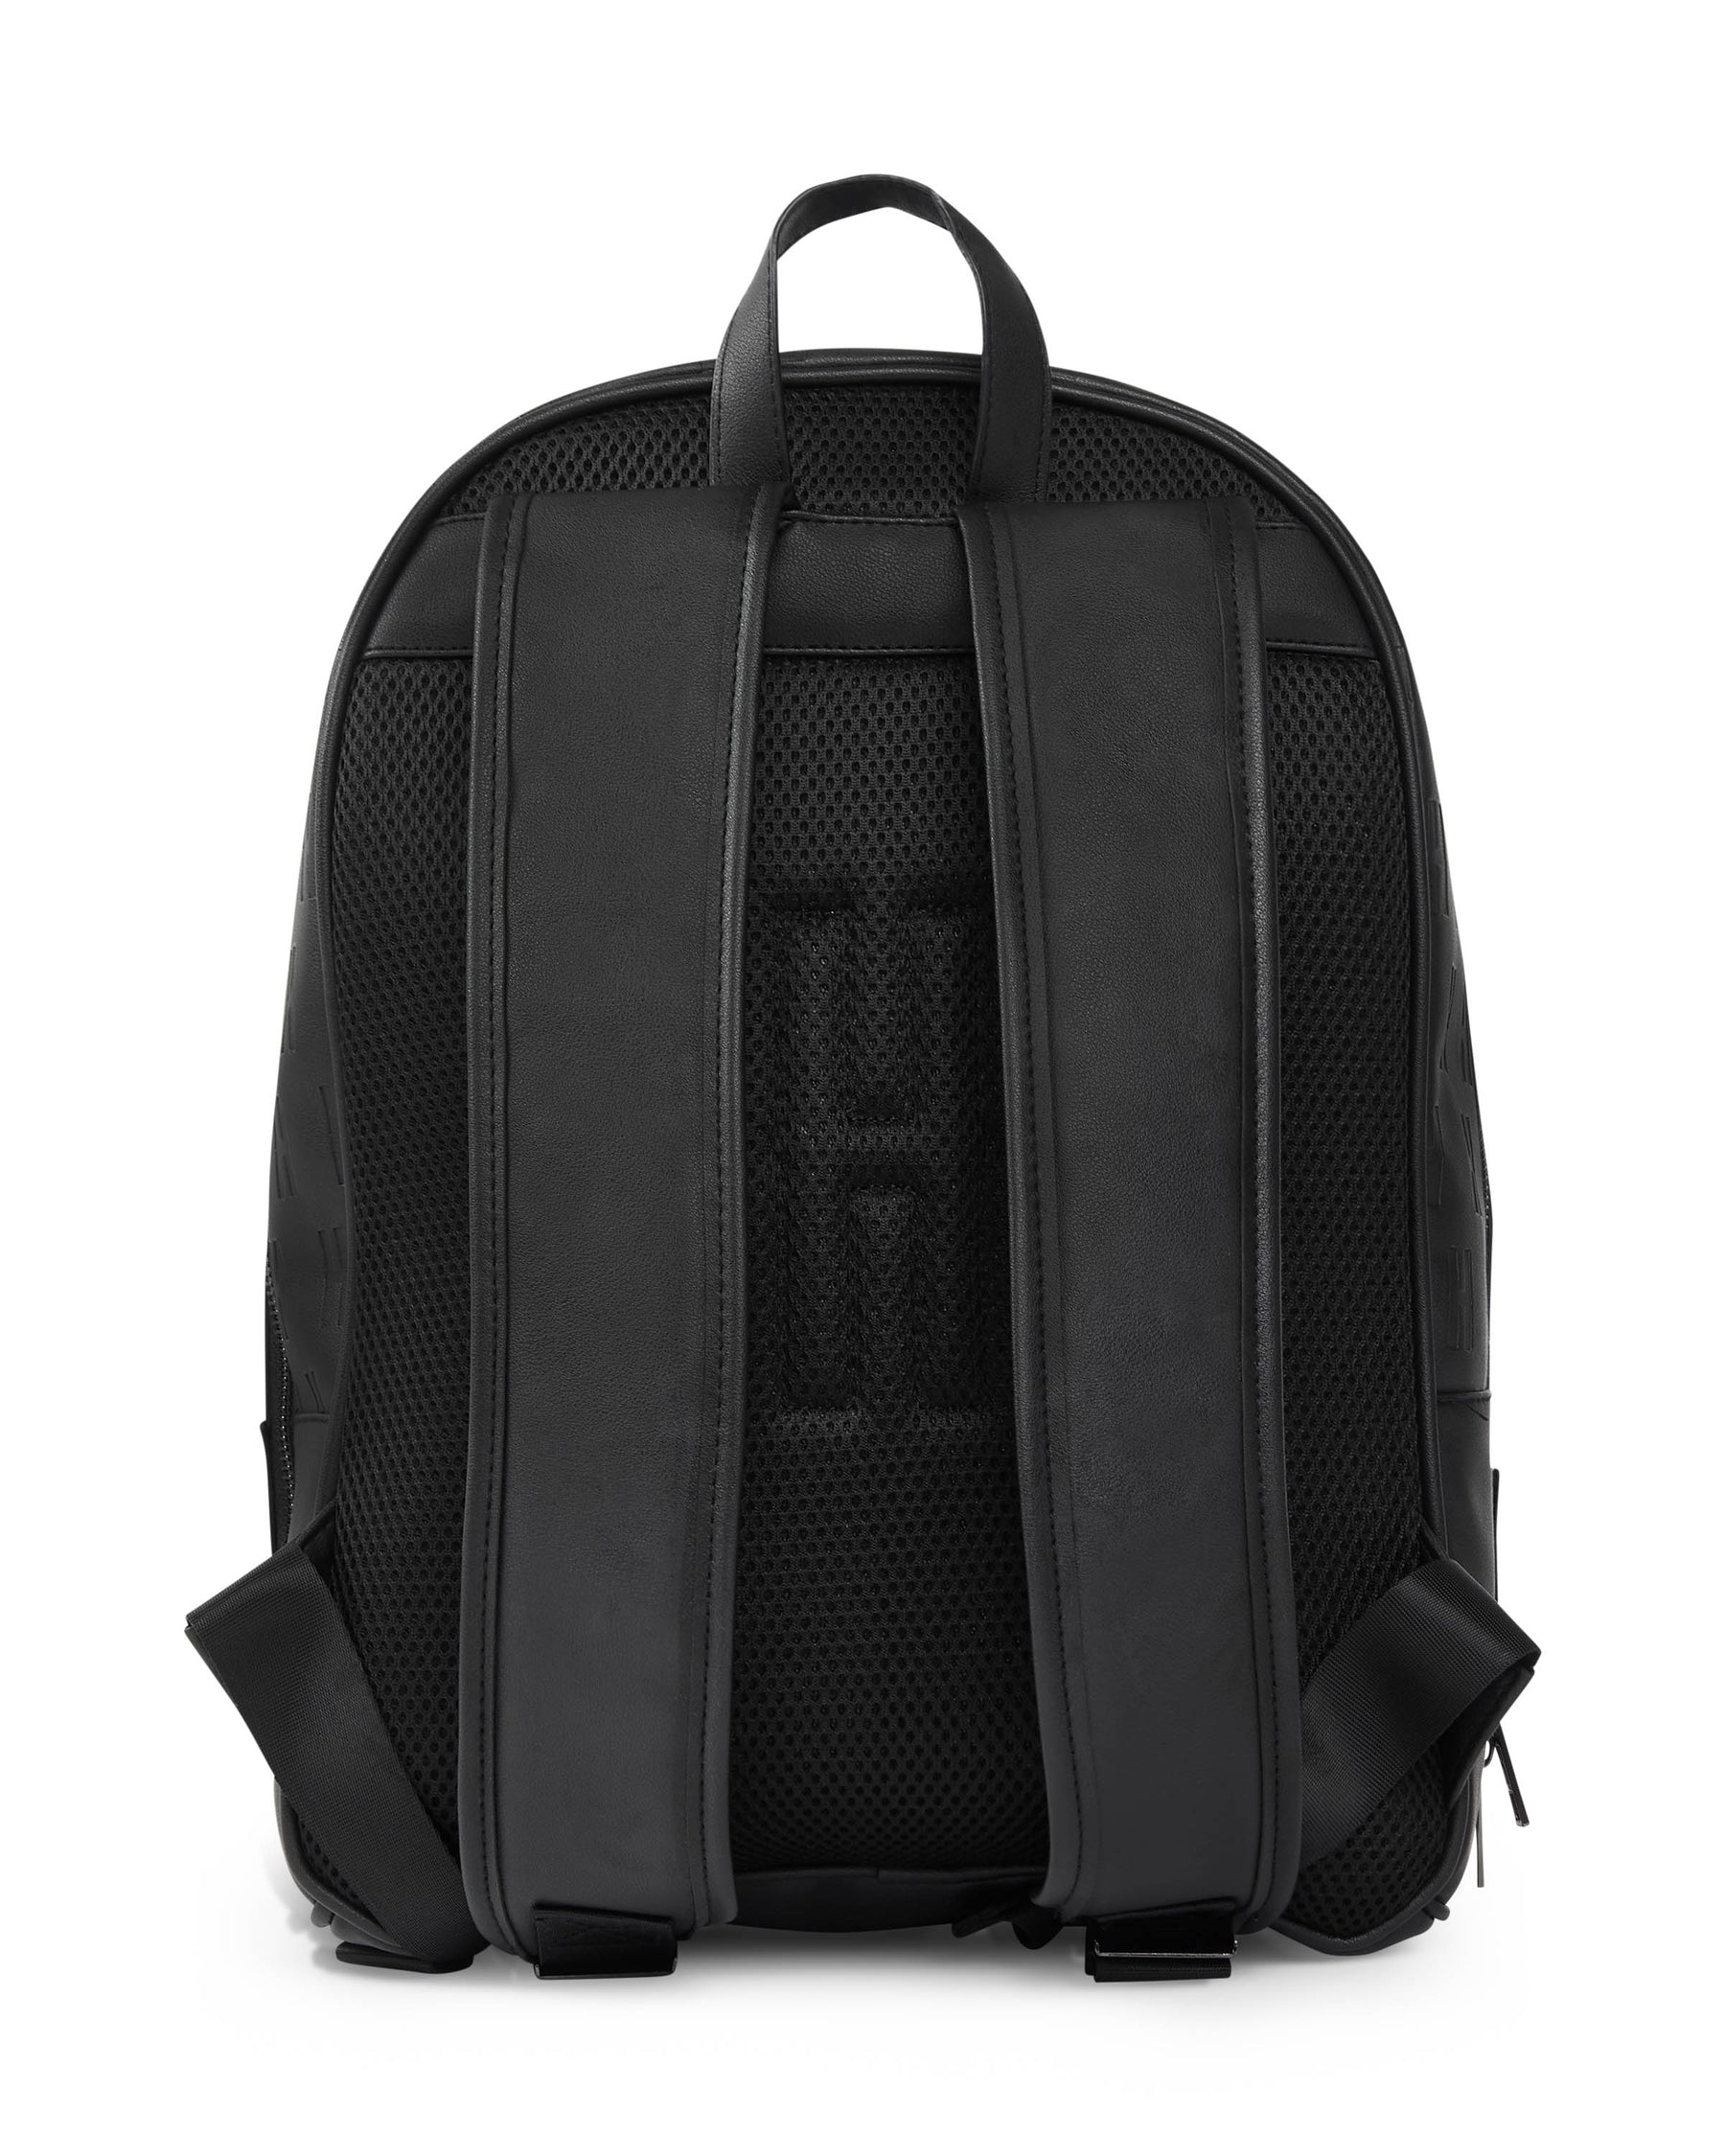 OG Exclusive Backpack - Black/Silver